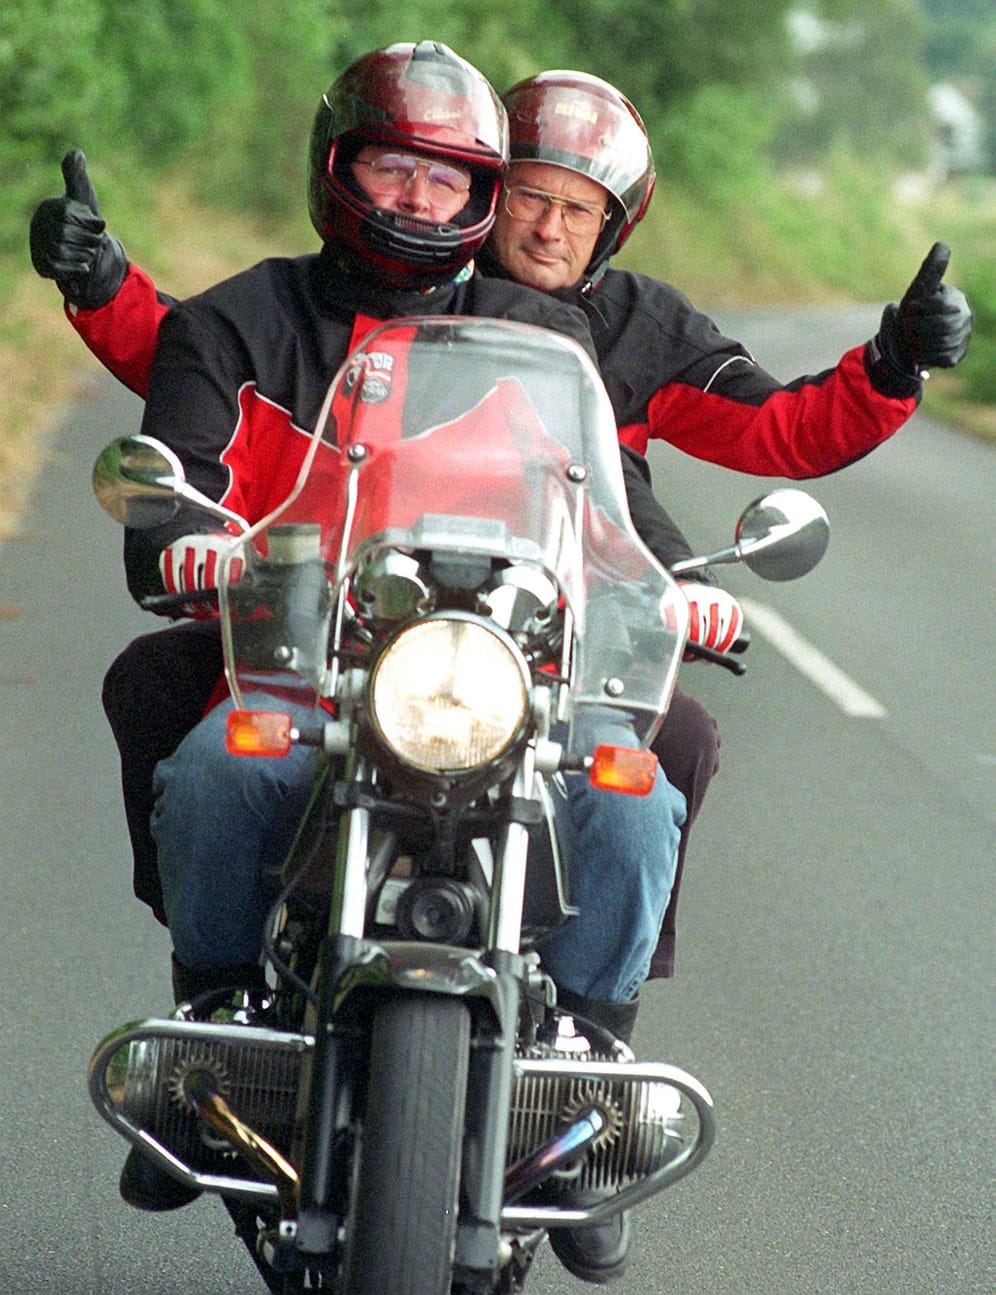 1998: Seinen Jugendtraum vom Motorrad fahren erfüllt sich der damalige Bundesaußenminister Klaus Kinkel (re.) mit Hilfe seines Pressesprechers Martin Erdmann auf einer kurvigen Strecke bei Bonn.